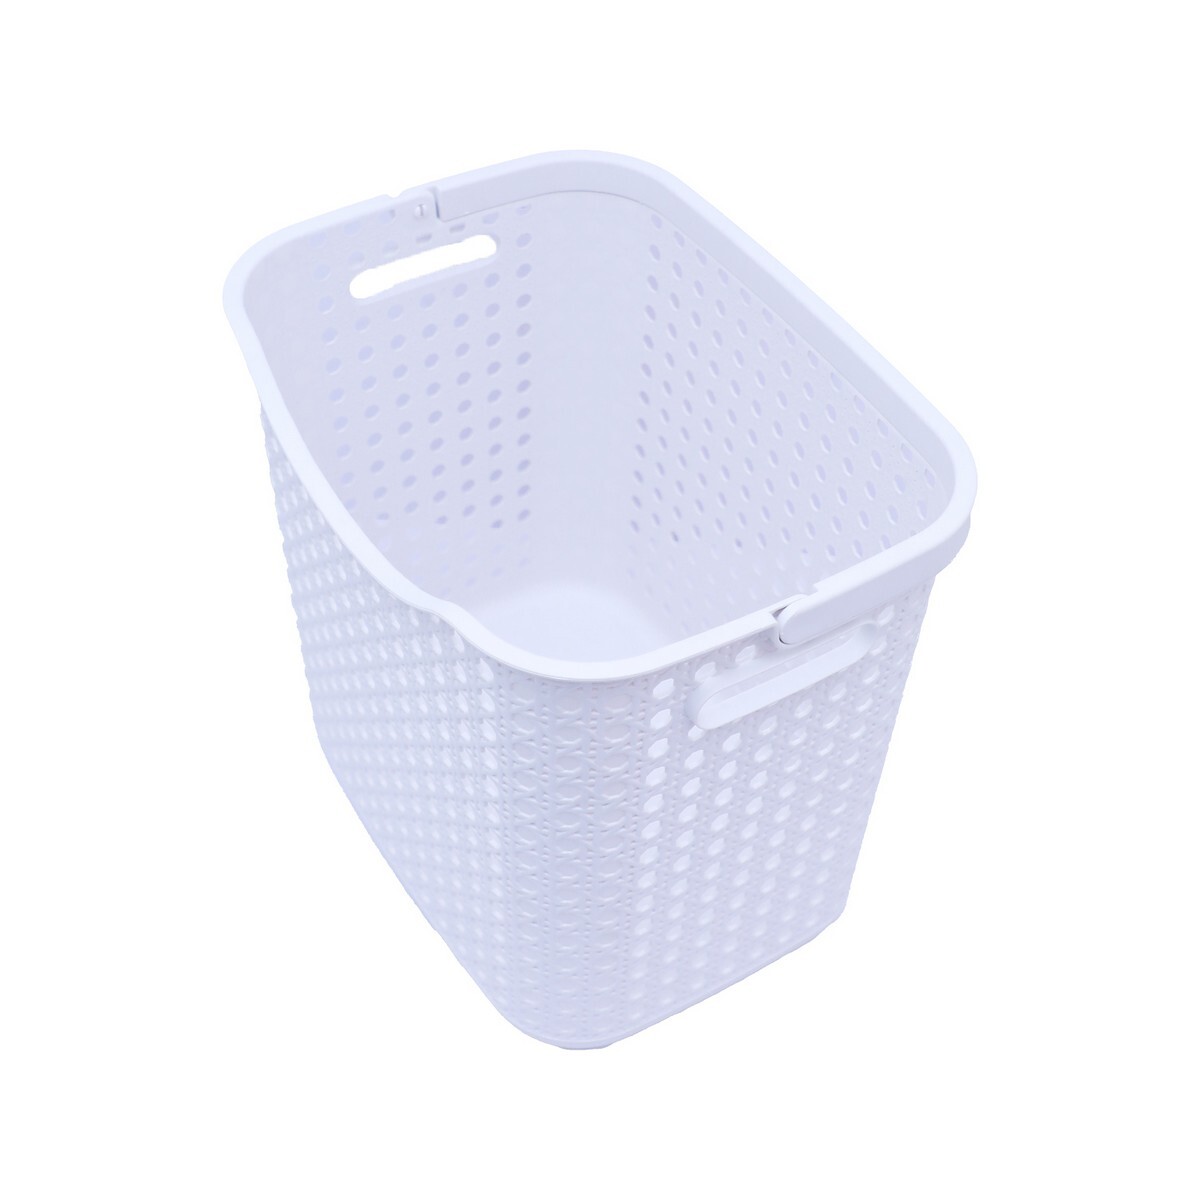 Home Storage Basket GS2018-27